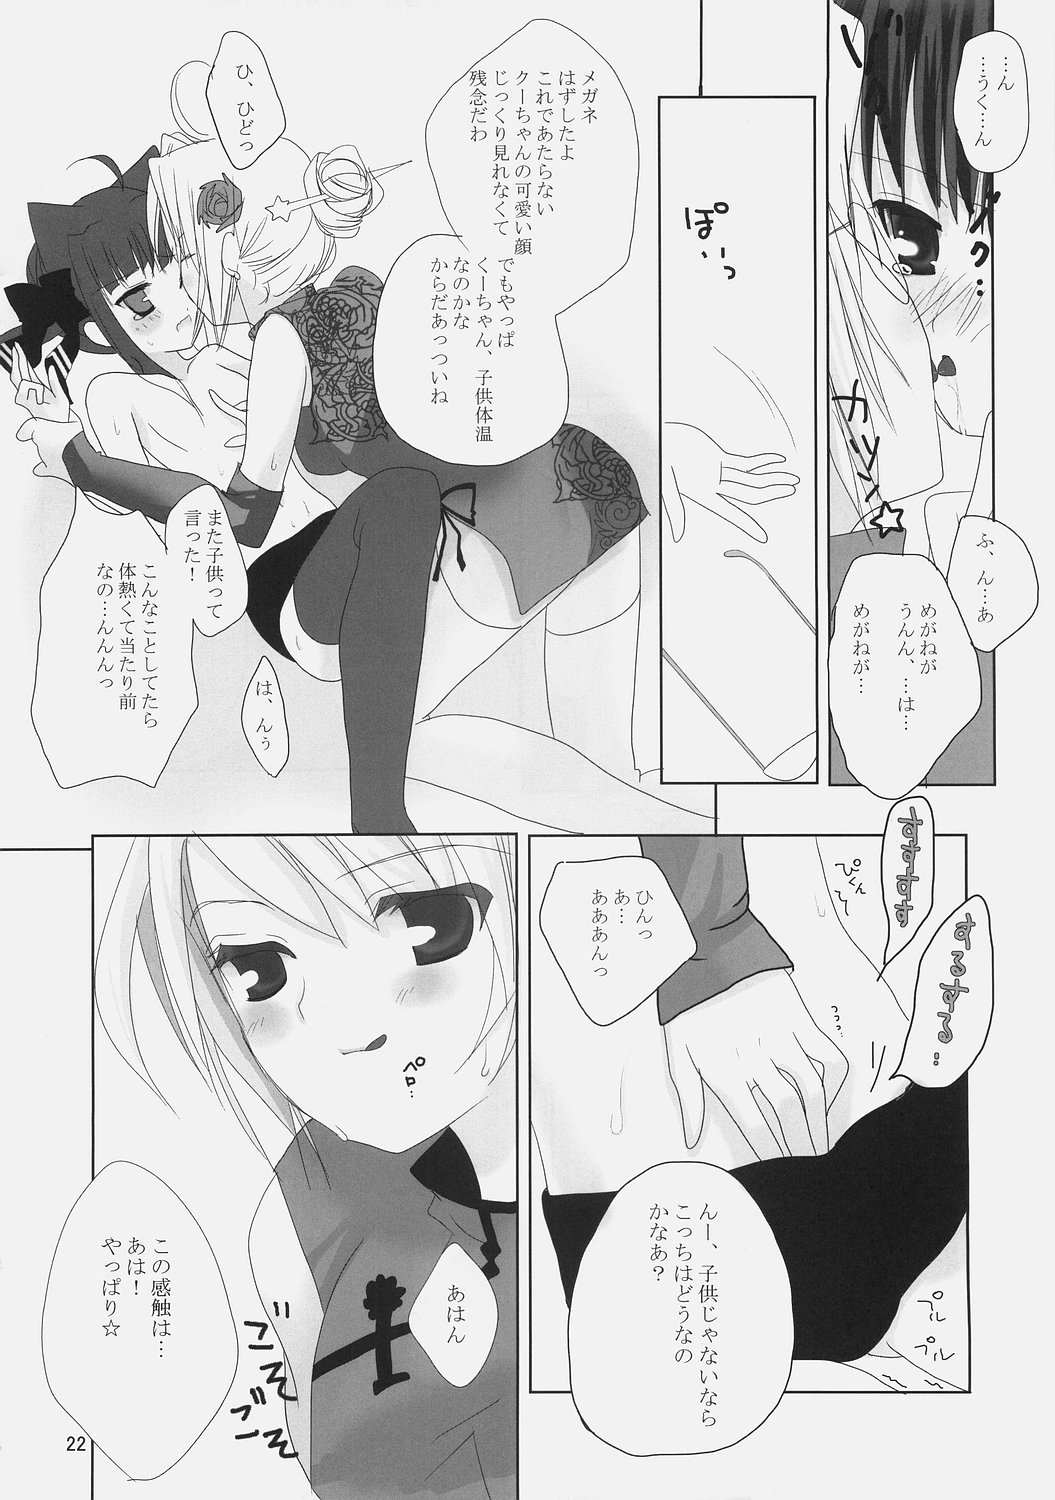 (ComiComi9) [Umi No Sachi Teishoku, Chimaroni?, Fake fur, (Kakifly, Chimaro, Furu)] PanPanPangya (Sukatto Golf Pangya) page 21 full